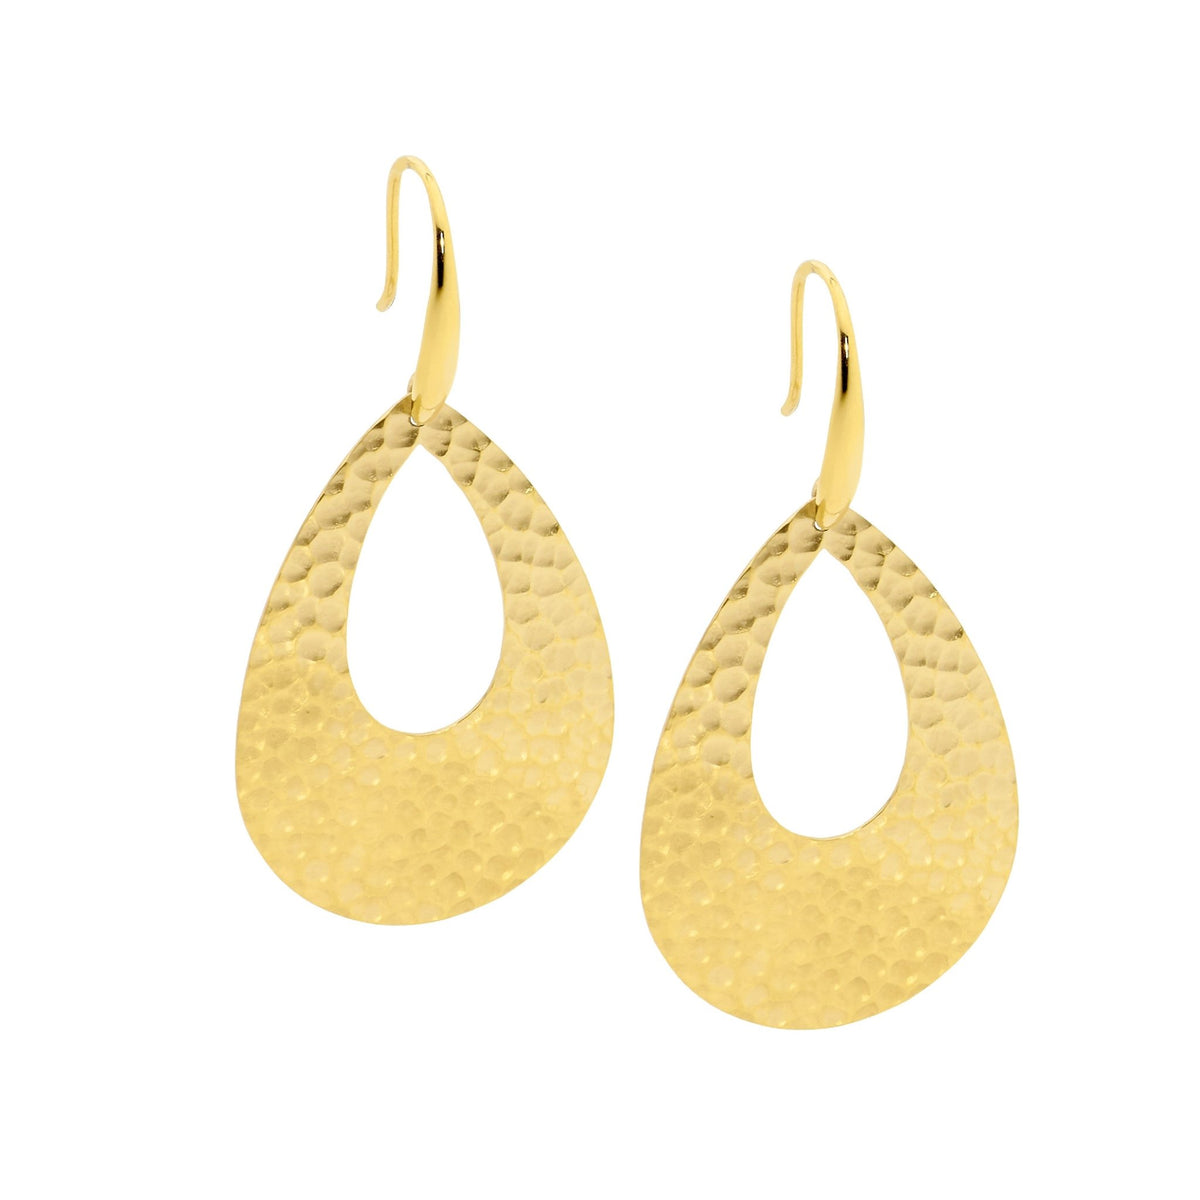 Stainless Steel Earring Gold - SE235G - Markbridge Jewellers